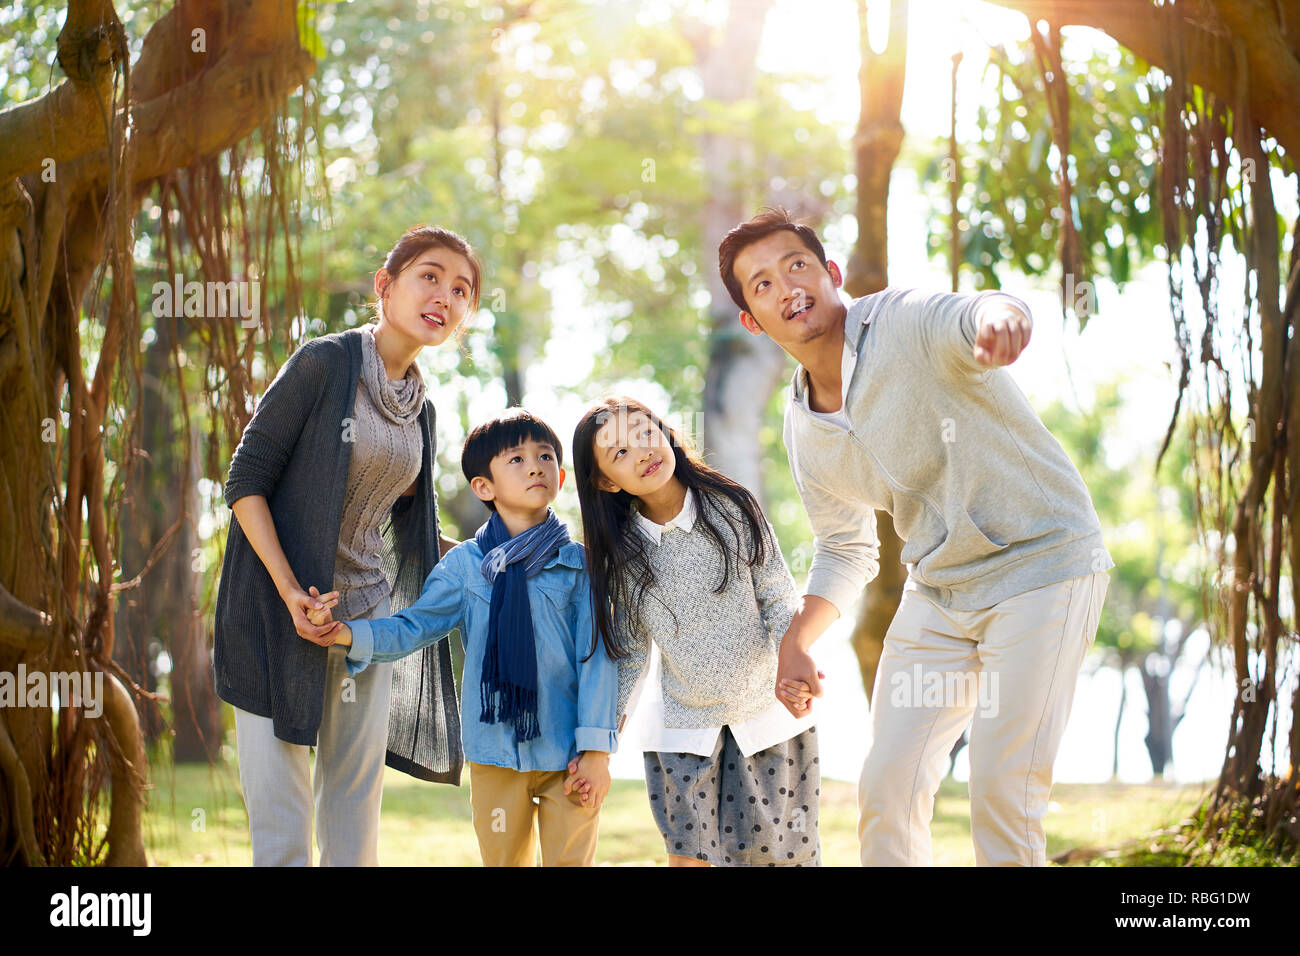 Famiglia asiatica con due bambini che si divertono ad esplorare i boschi in un parco. Foto Stock